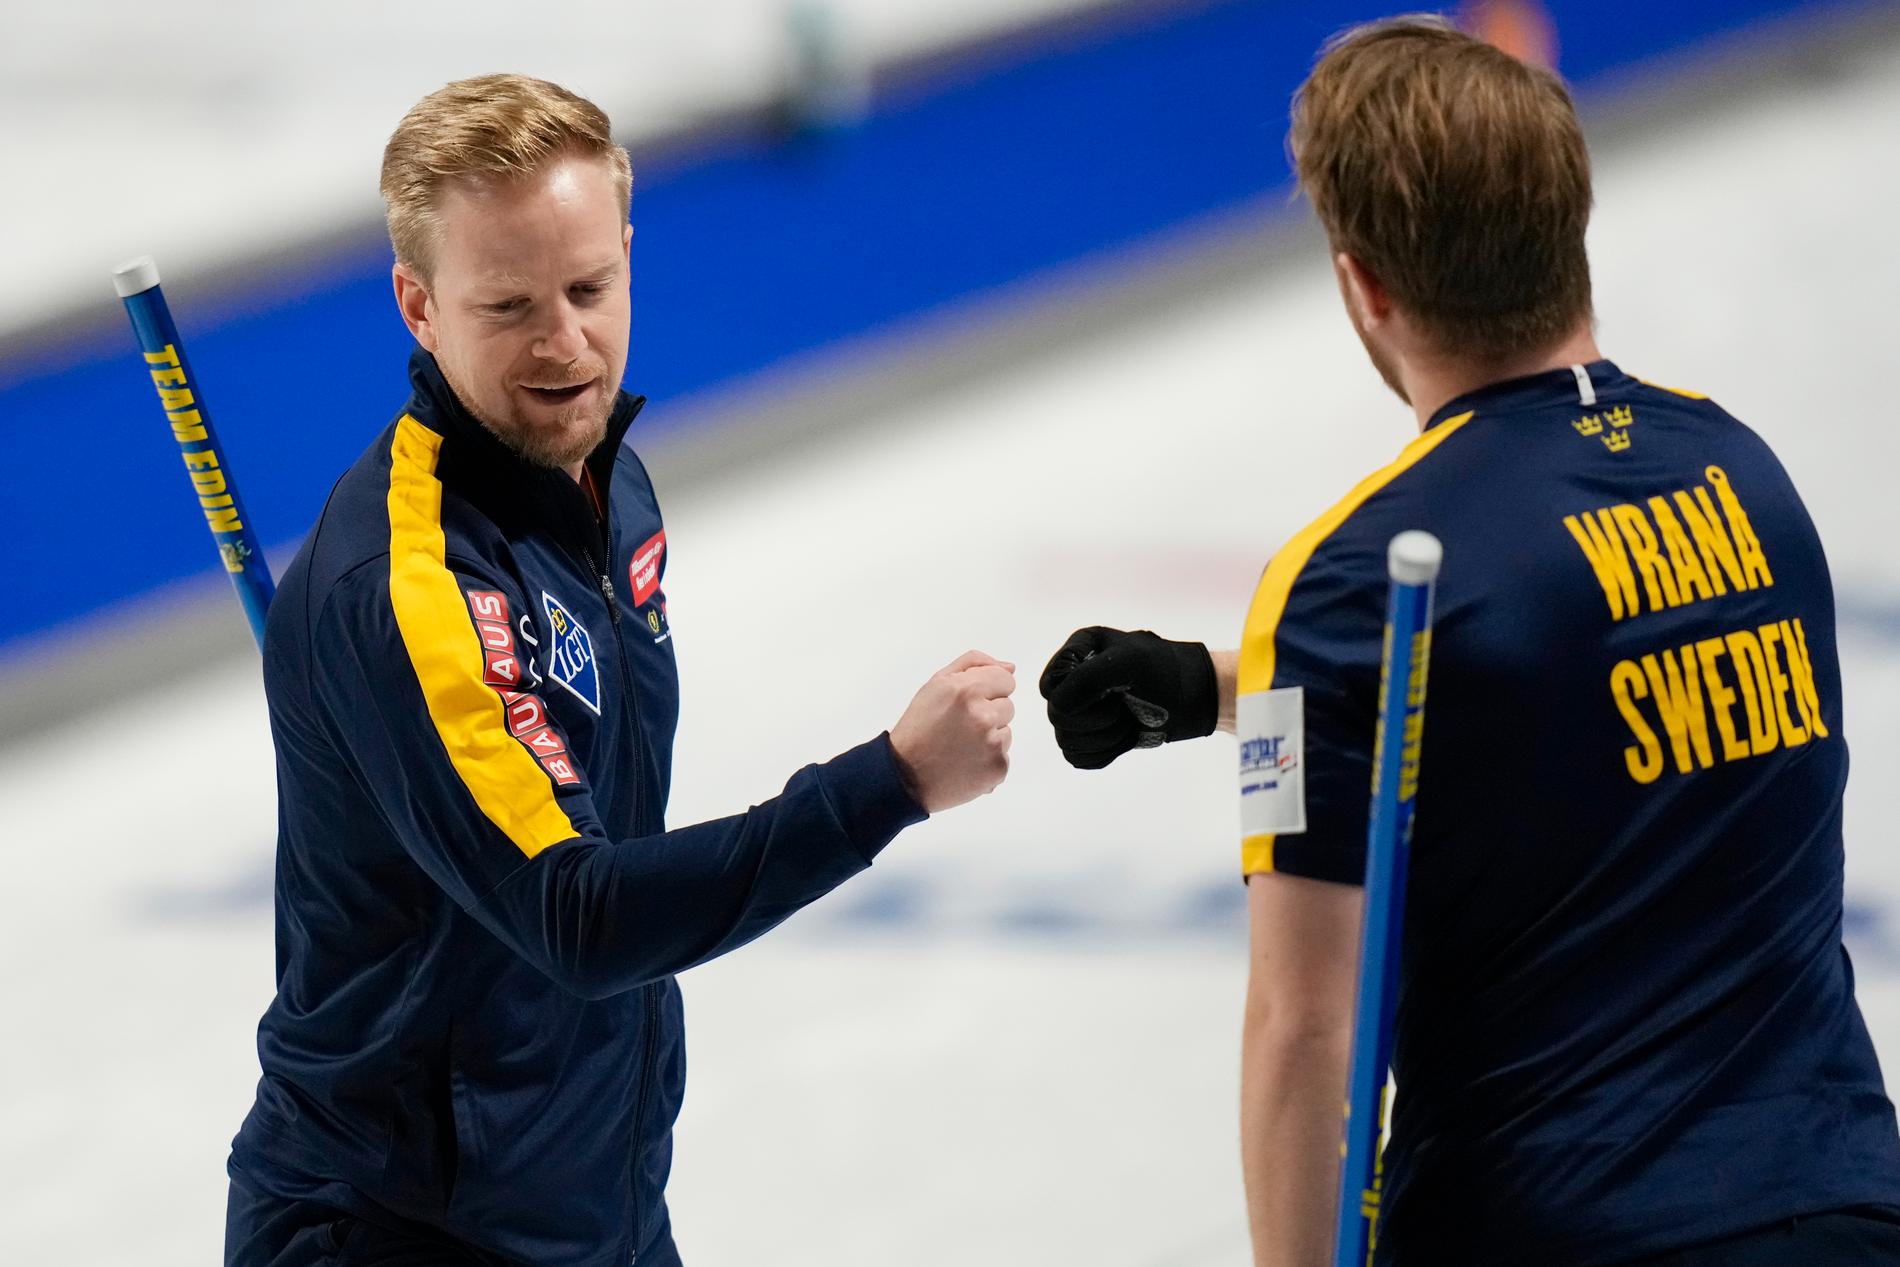 Niklas Edin och Rasmus Wranå under curling-VM.